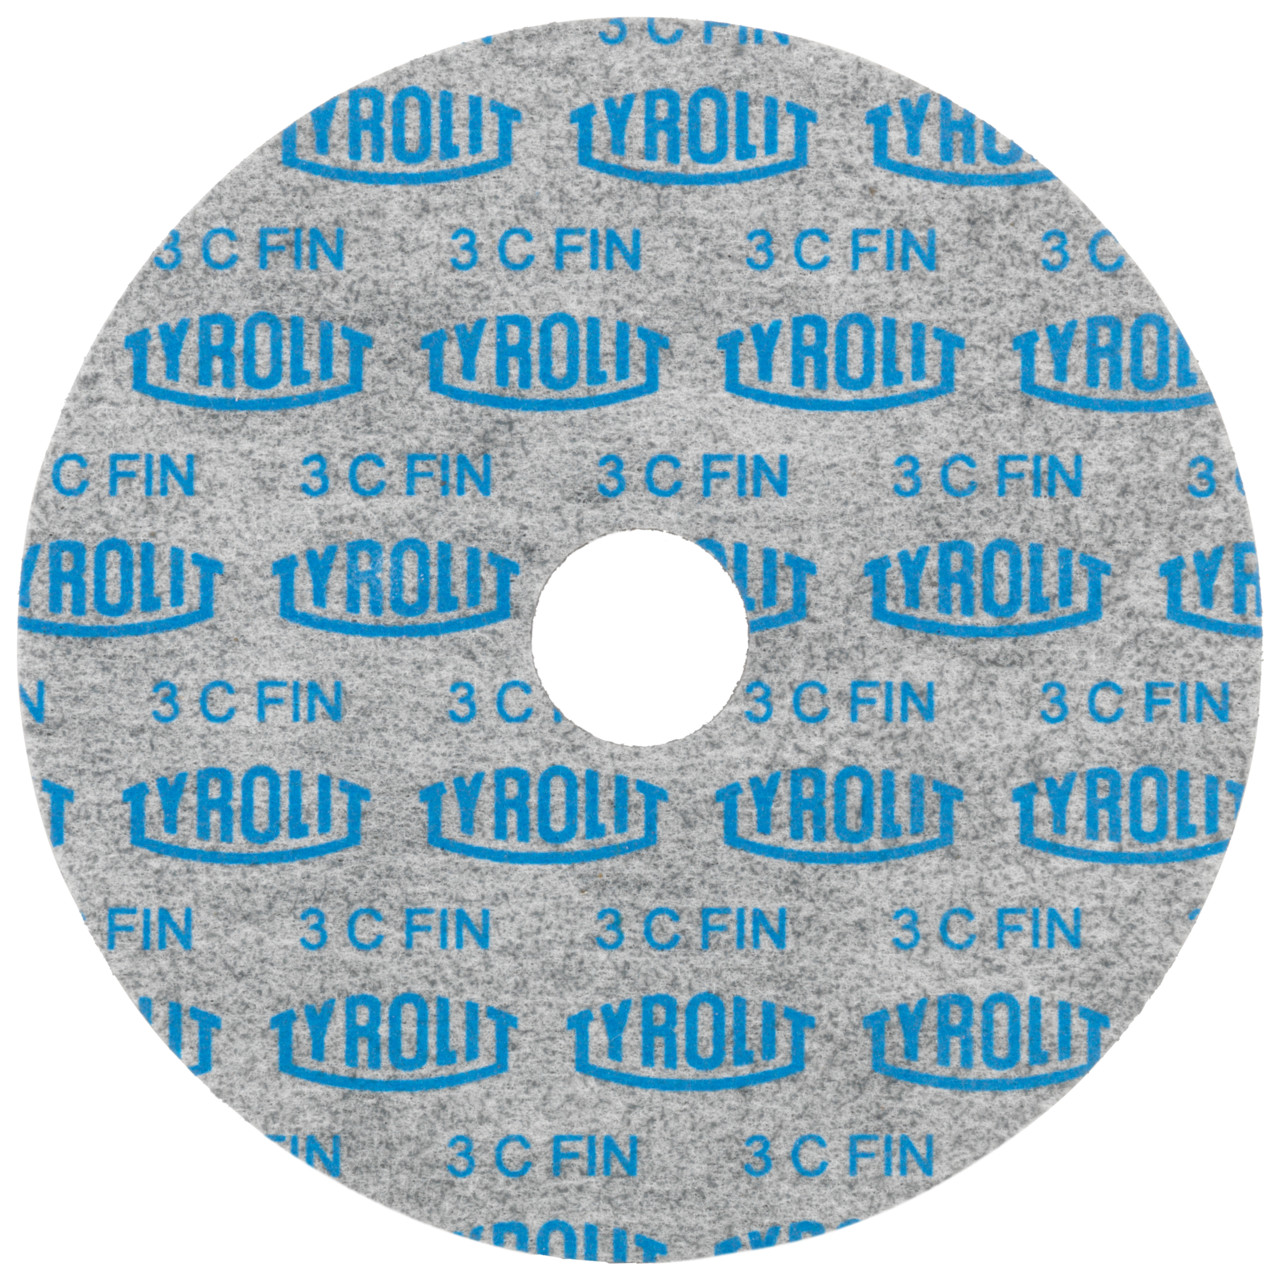 Tyrolit Discos compactos prensados DxDxH 152x6x25,4 De uso universal, 8 A GROB, forma: 1, Art. 34190279